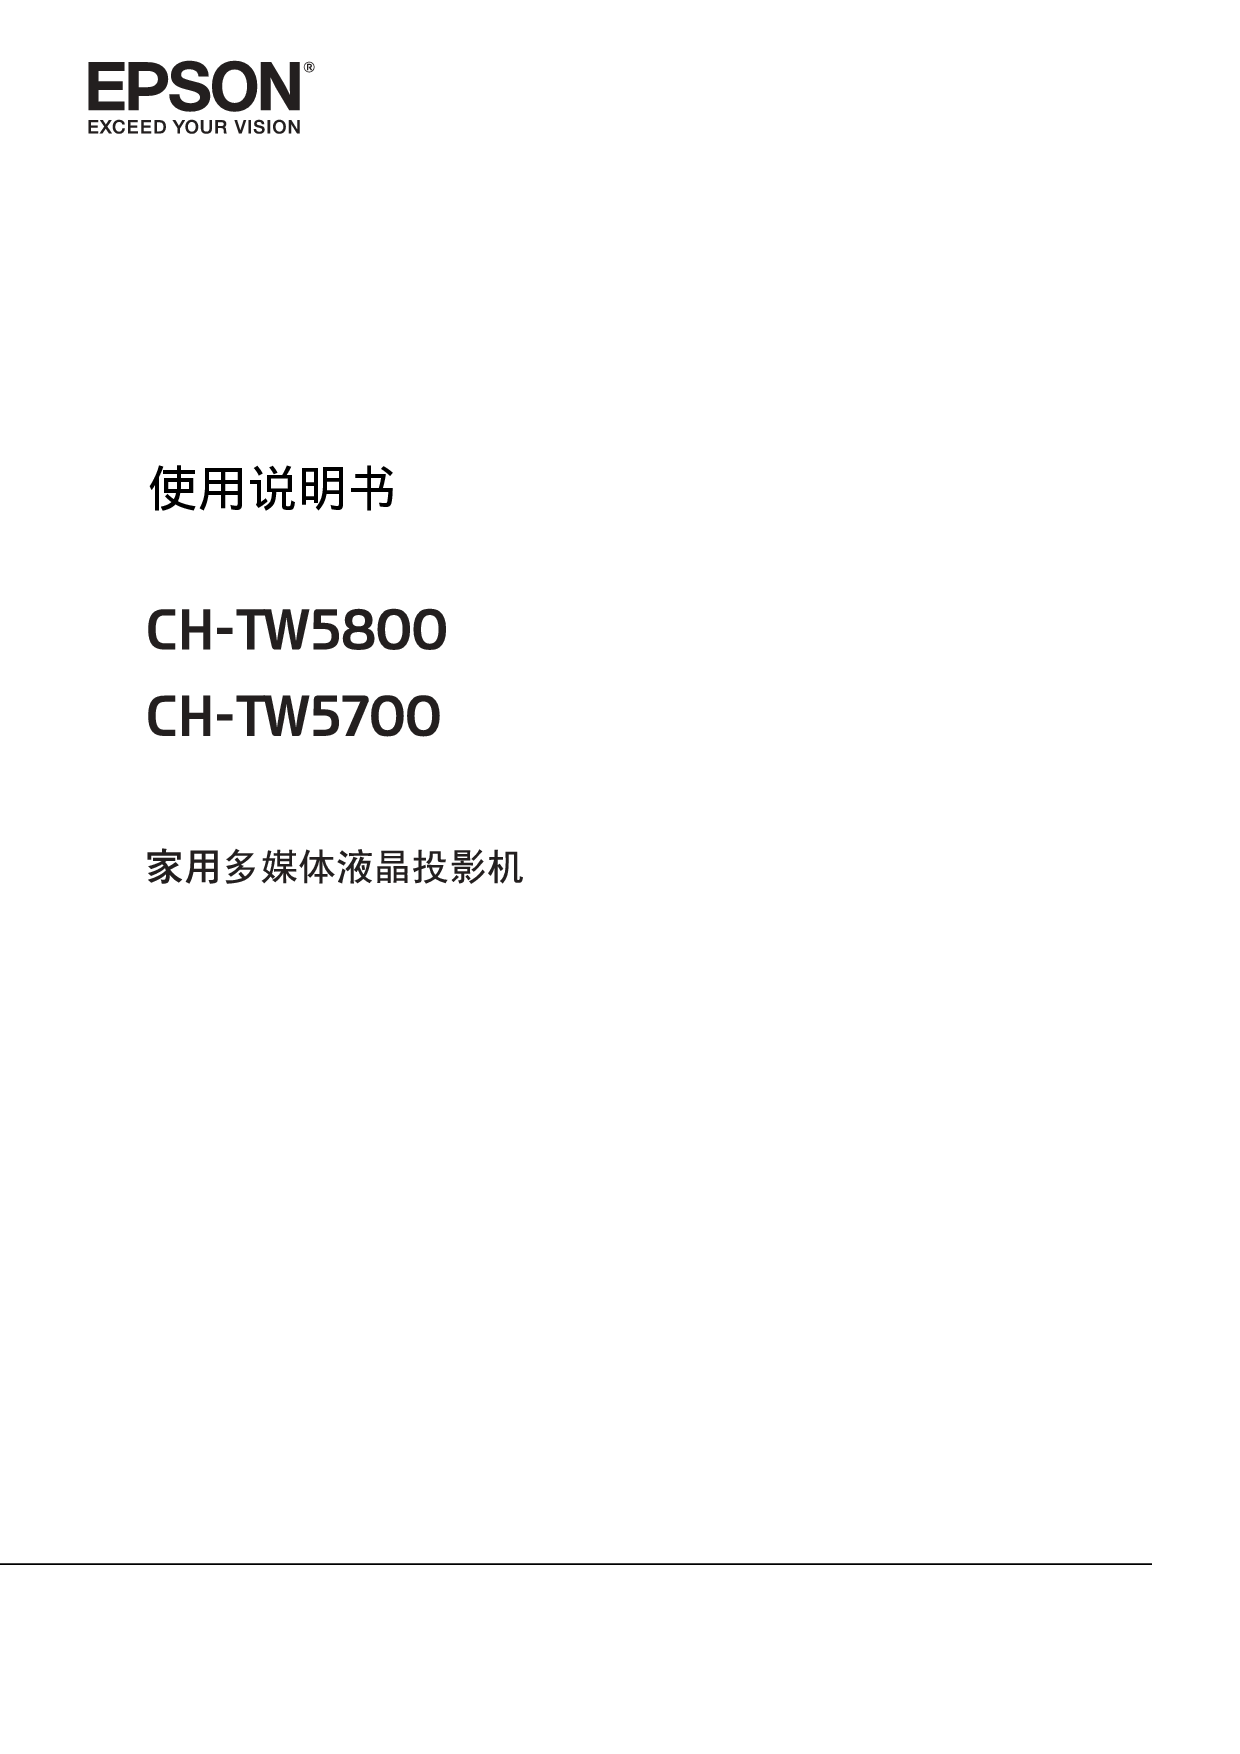 爱普生 Epson CH-TW5700 使用说明书 封面